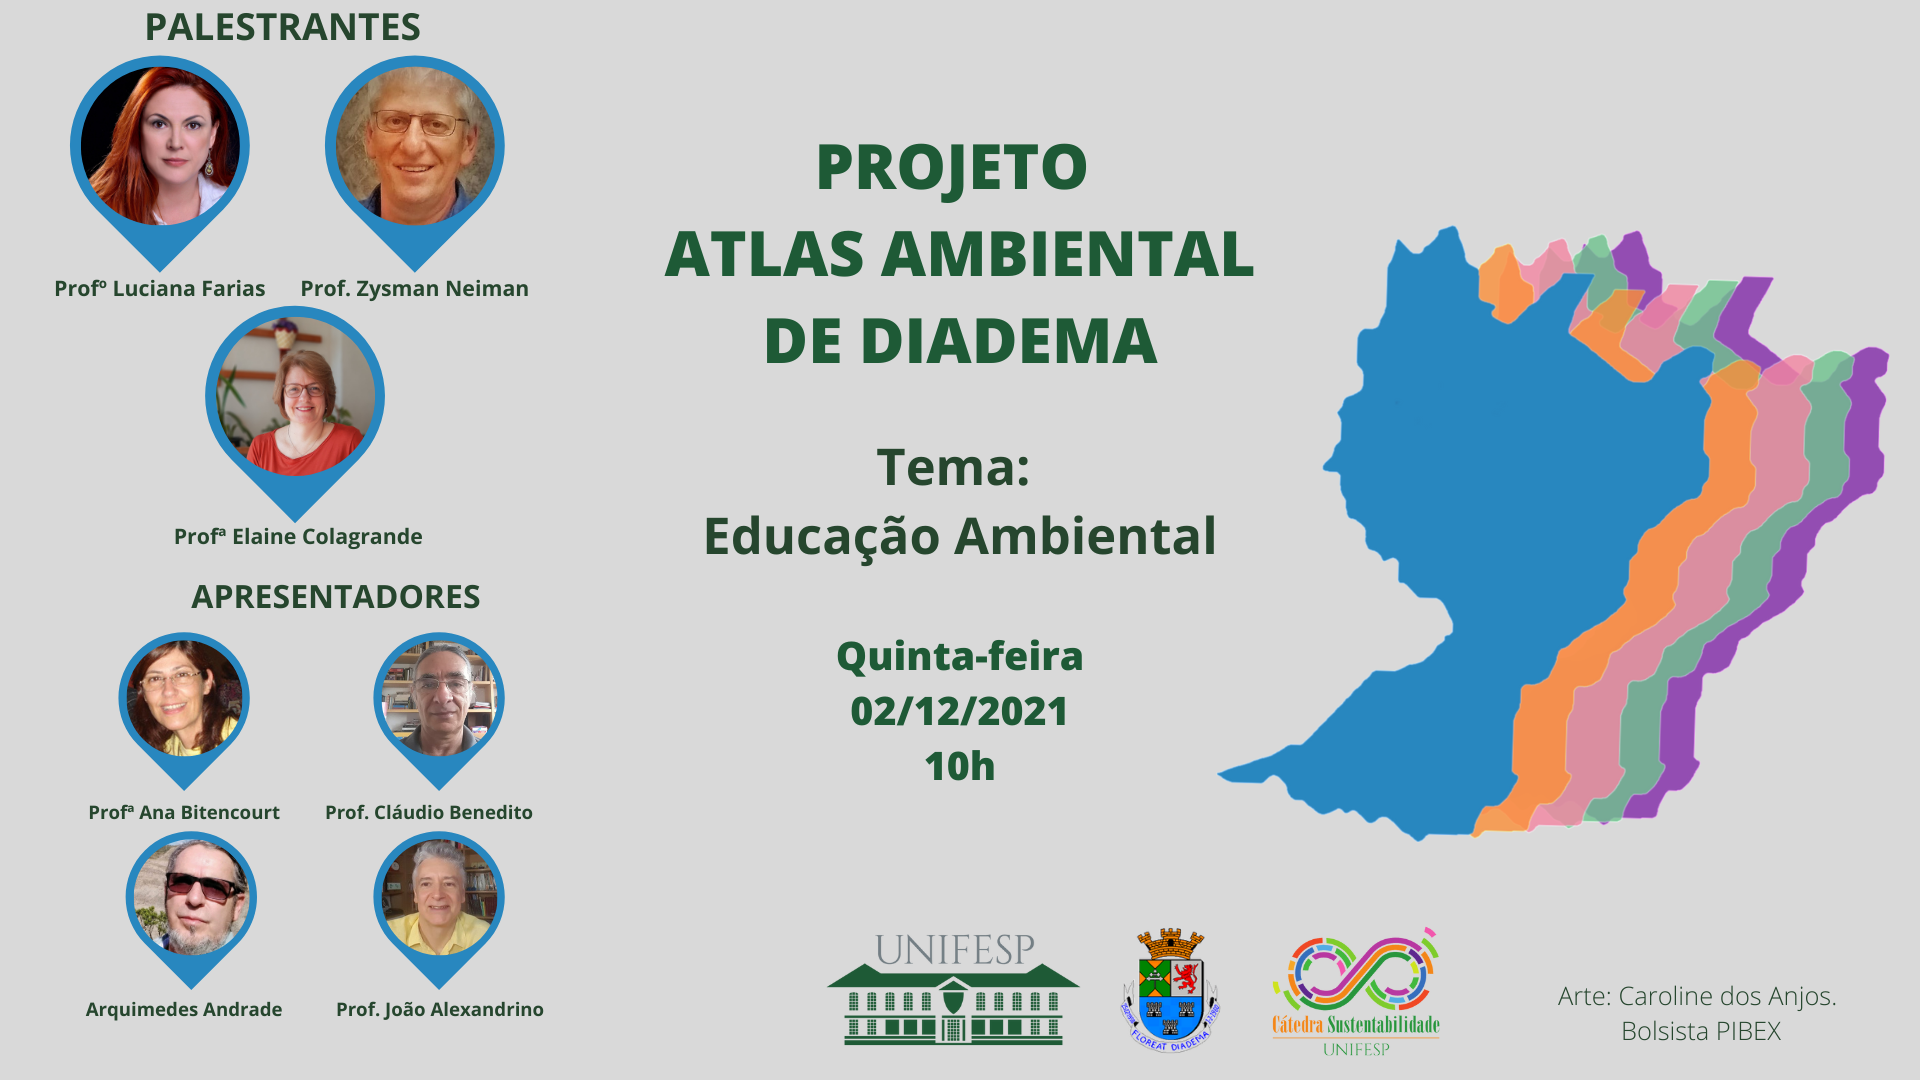 Projeto Atlas Ambiental de Diadema. Temática Educação Ambiental